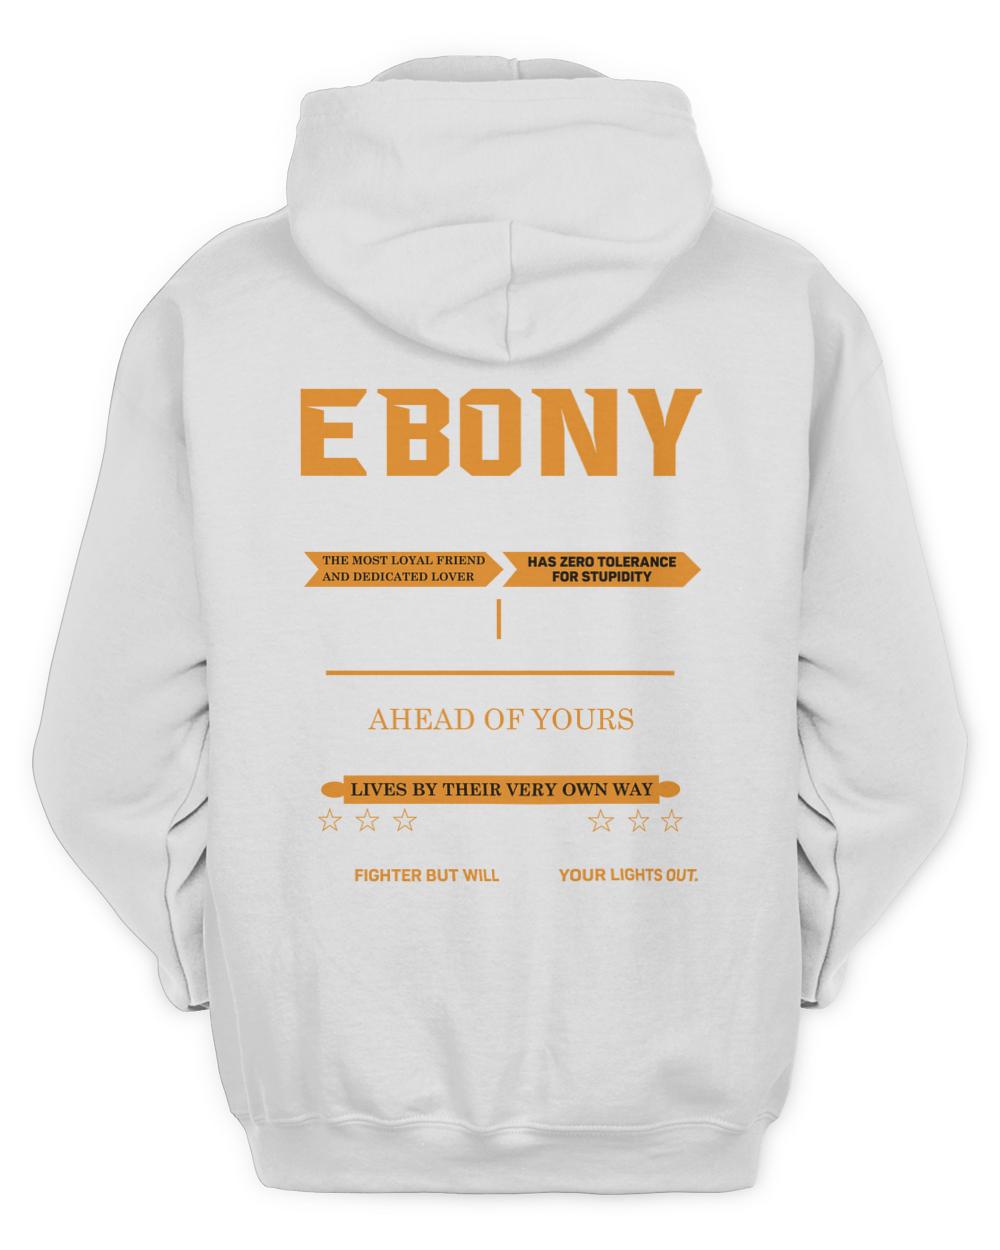 EBONY-13K-N1-01